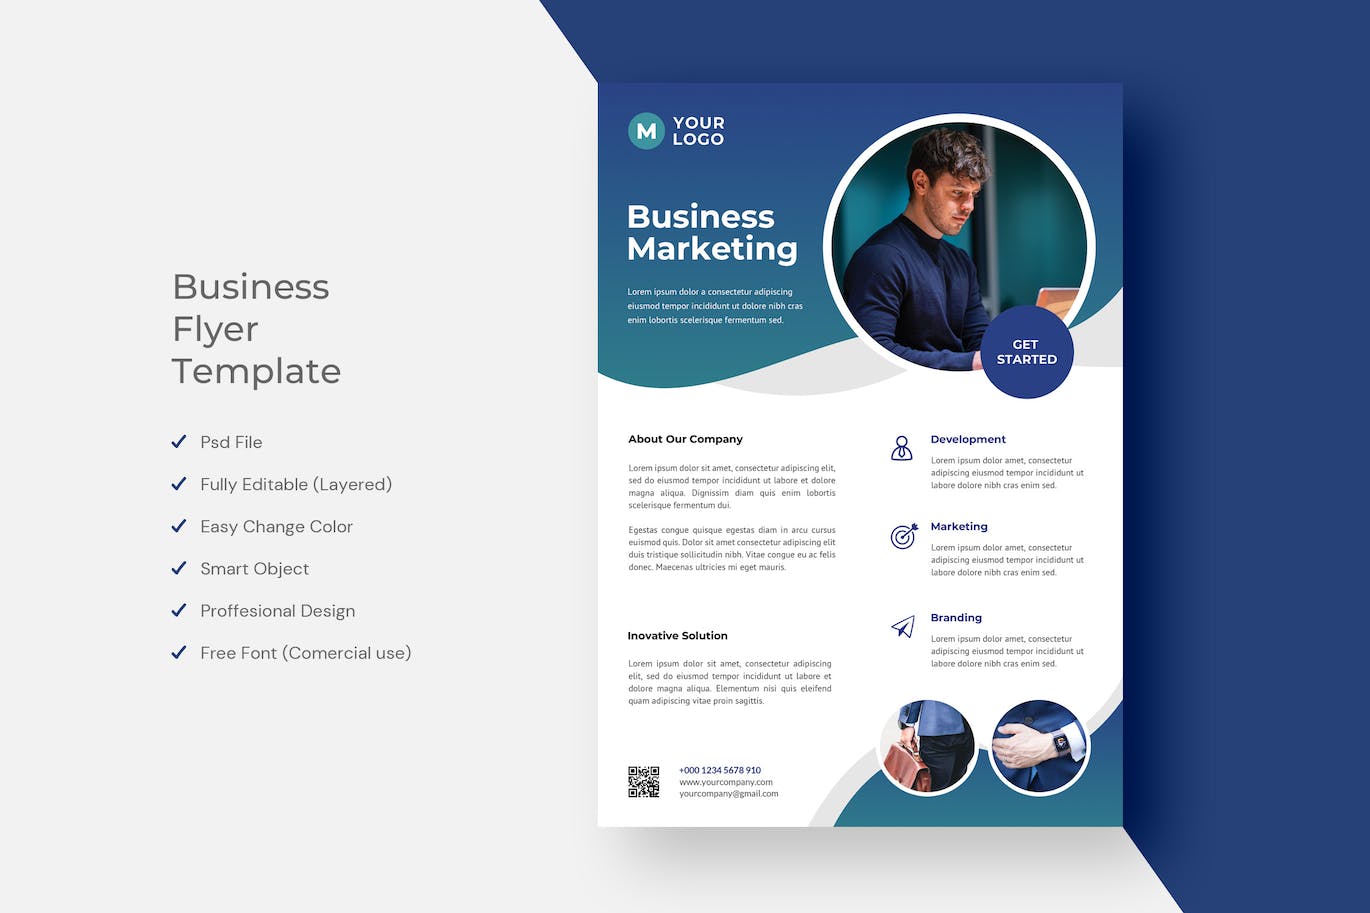 商业营销宣传单PSD素材 Business Flyer 设计素材 第1张